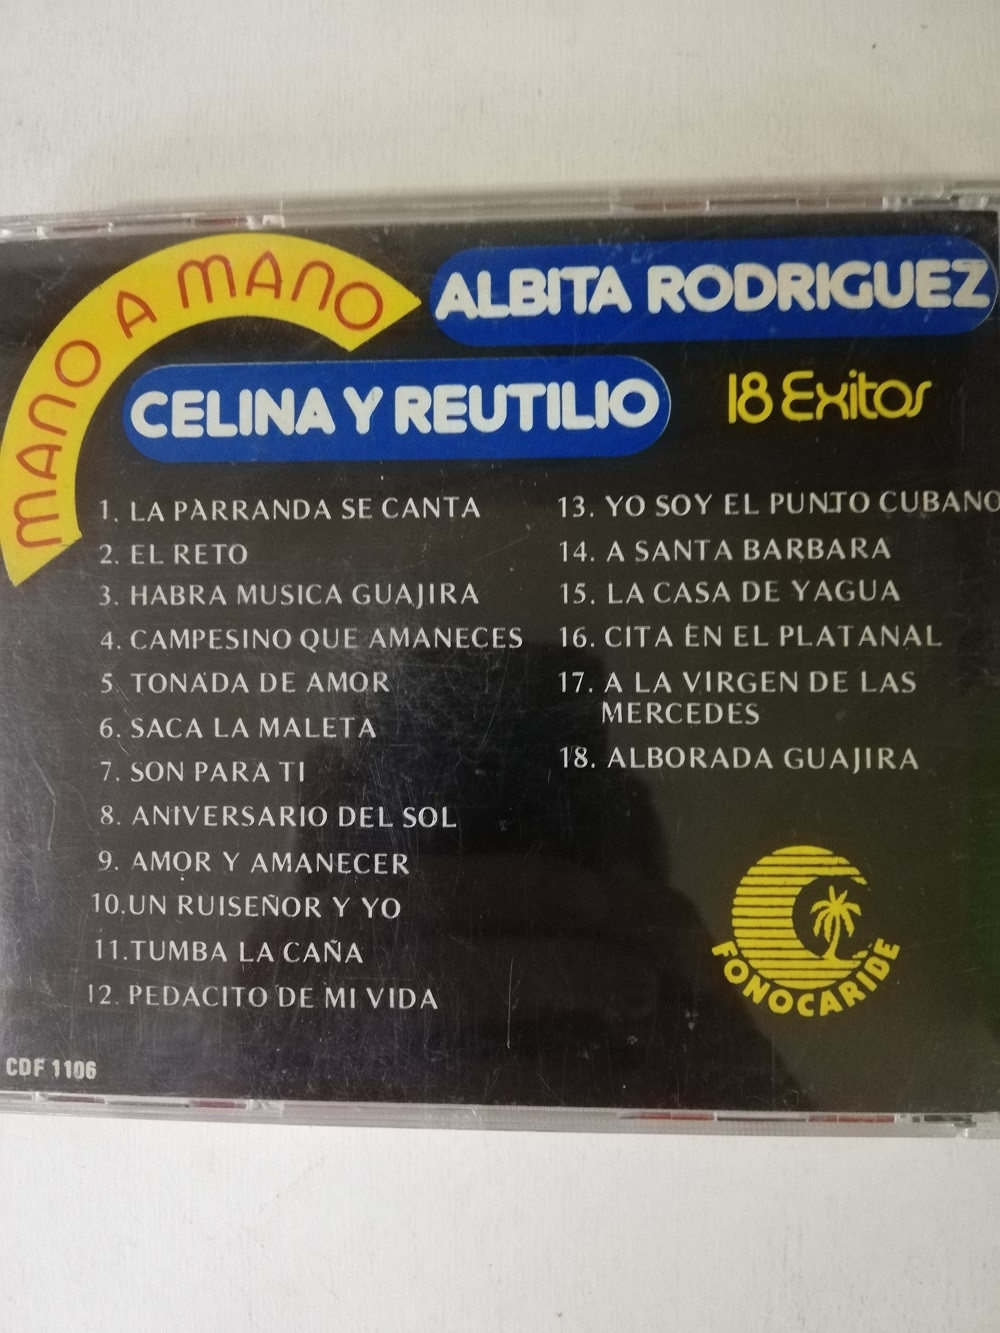 Imagen CD ALBITA RODRIGUEZ/CELINA Y REUTILIO - MANO A MANO, 18 EXITOS 2